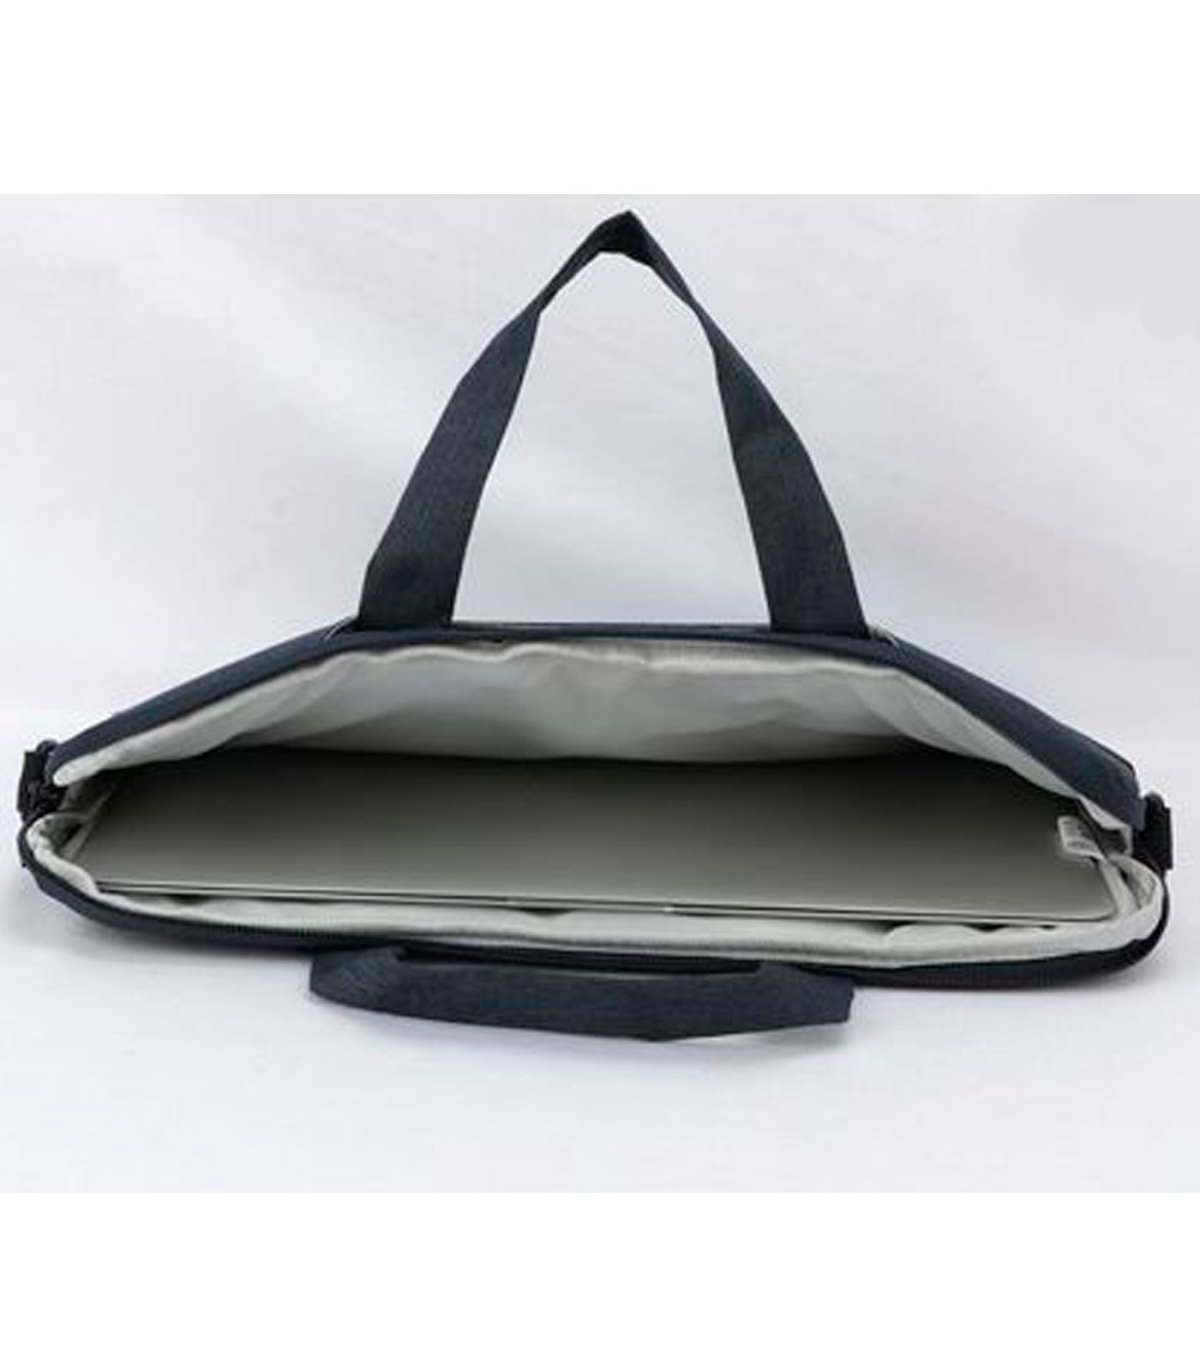 Tradineur - Bolsa para portátil de 11-12 pulgadas, bolso, funda, bandolera, maletín de tela impermeable con asas correa de hom